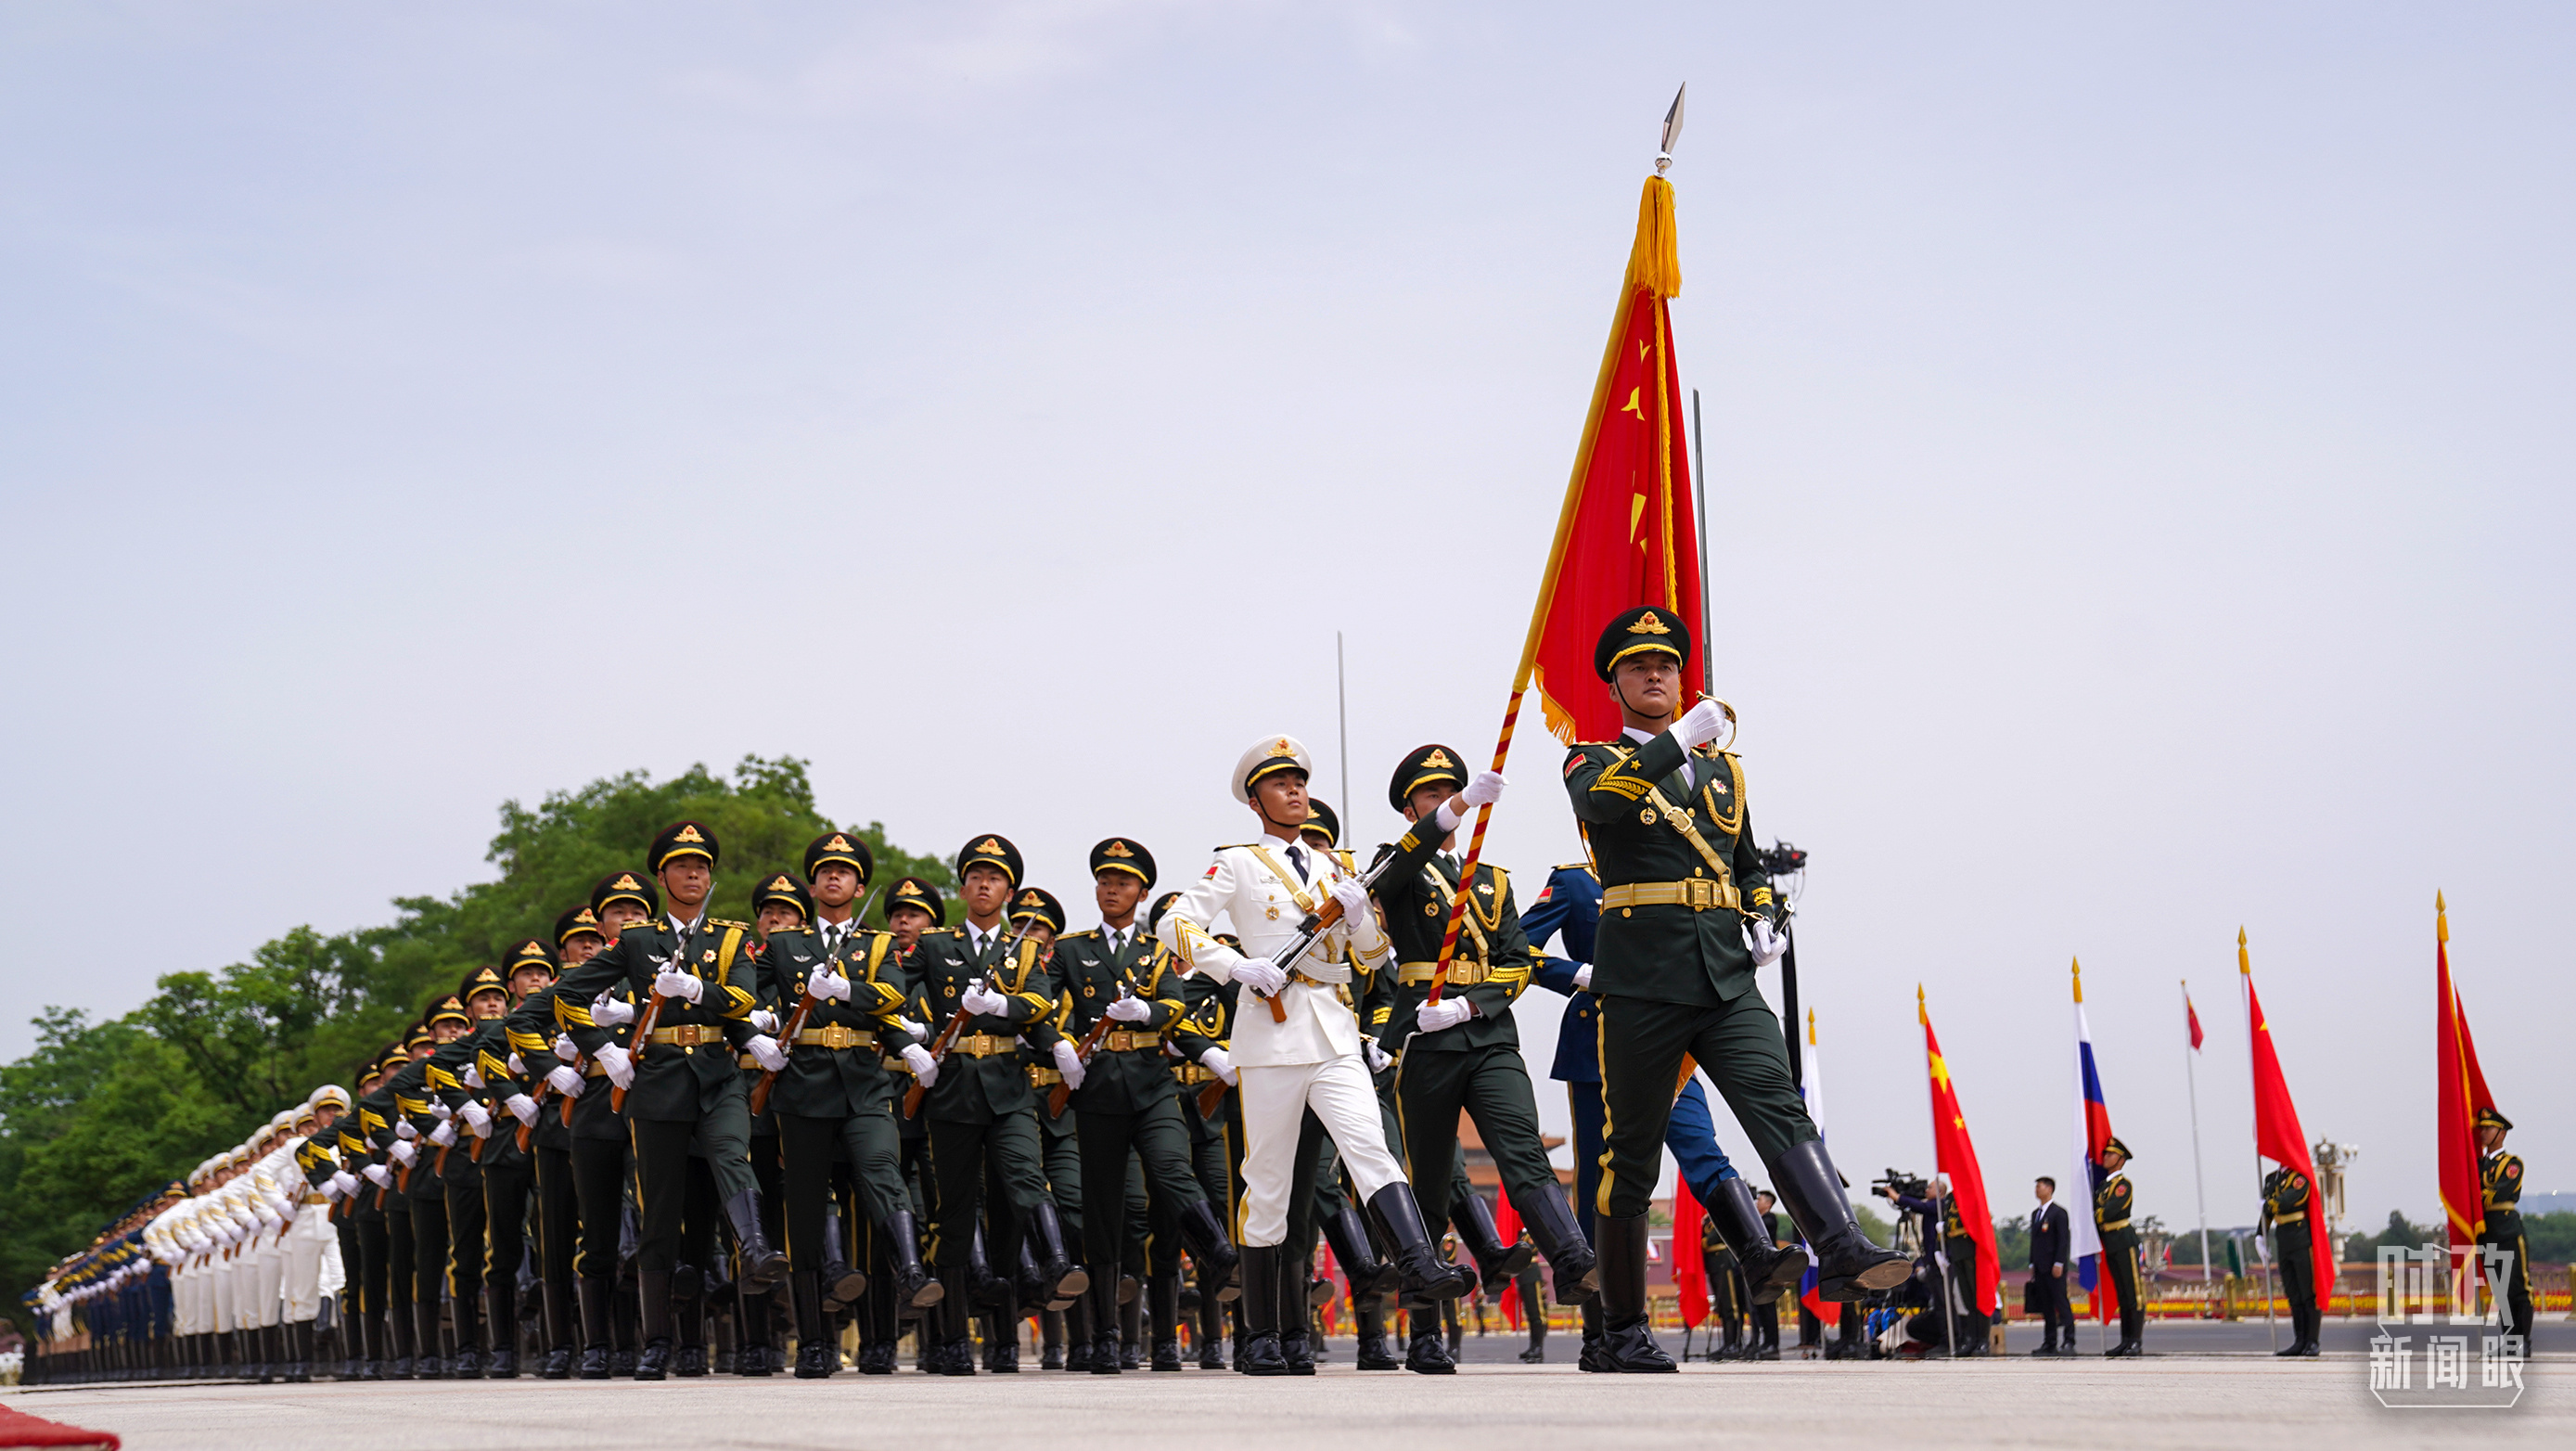 欢迎仪式现场的中国人民解放军仪仗队。（总台国广记者李晋拍摄）